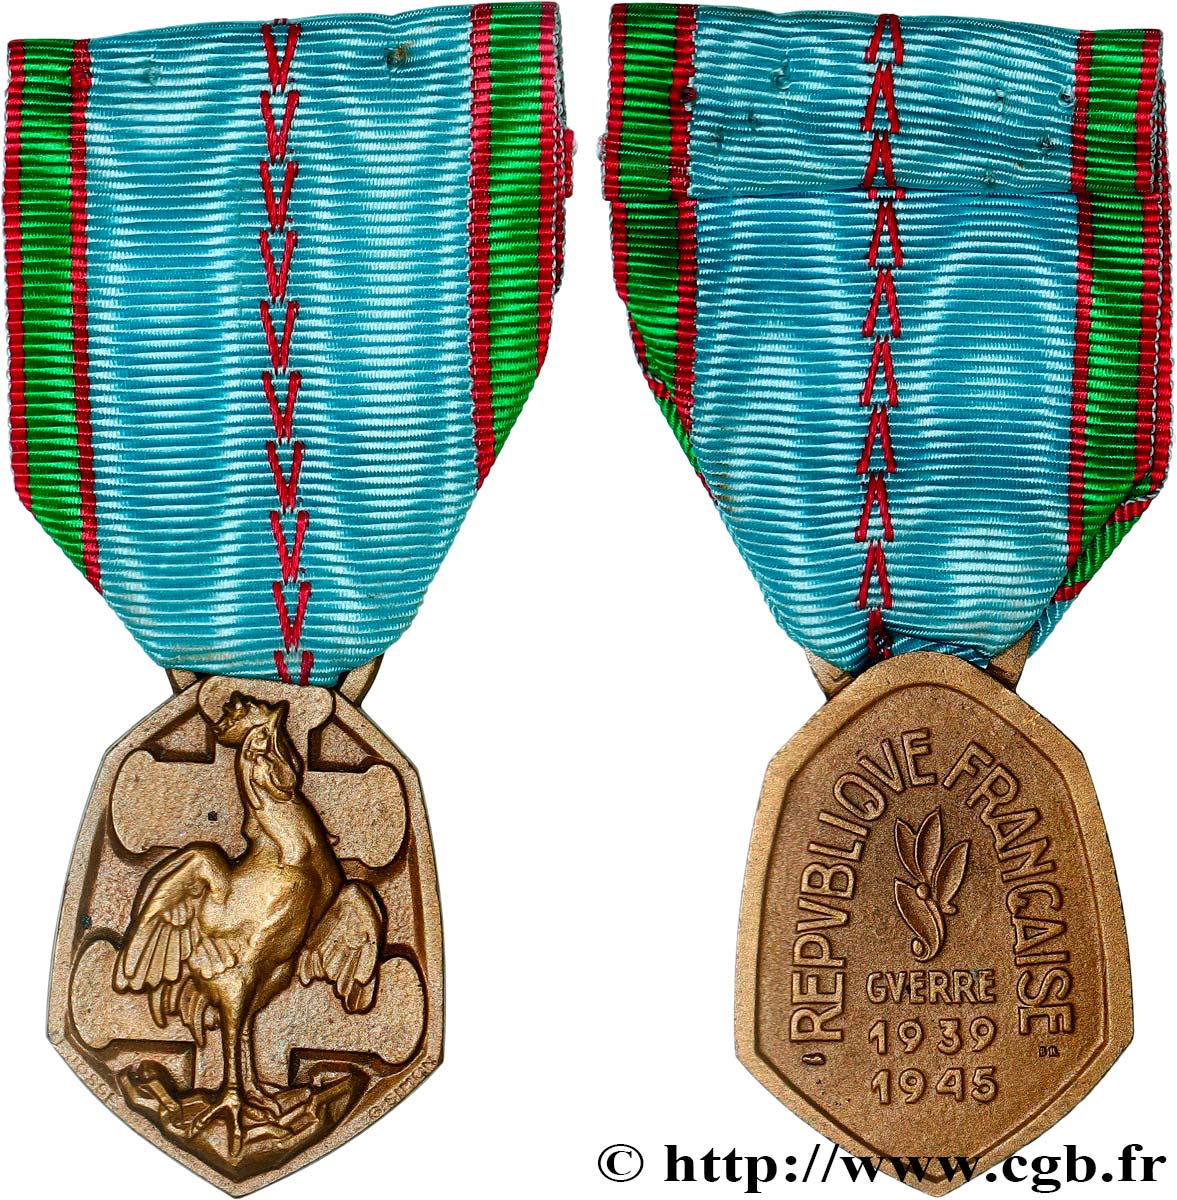 PROVISORY GOVERNEMENT OF THE FRENCH REPUBLIC Médaille commémorative française de la guerre 1939-1945 AU